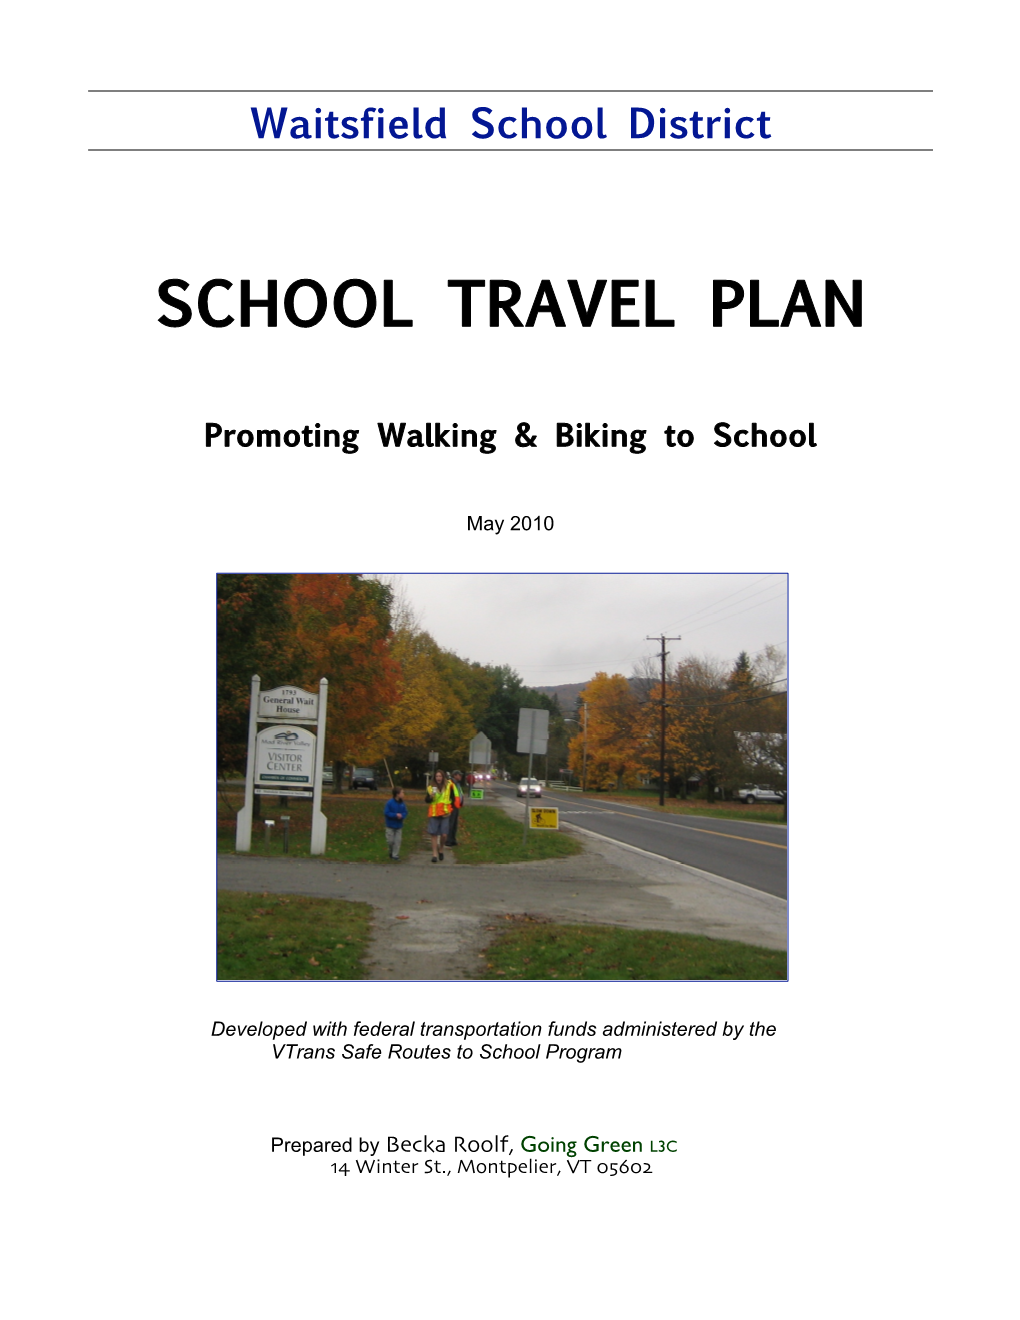 Waitsfield School Distrct School Travel Plan